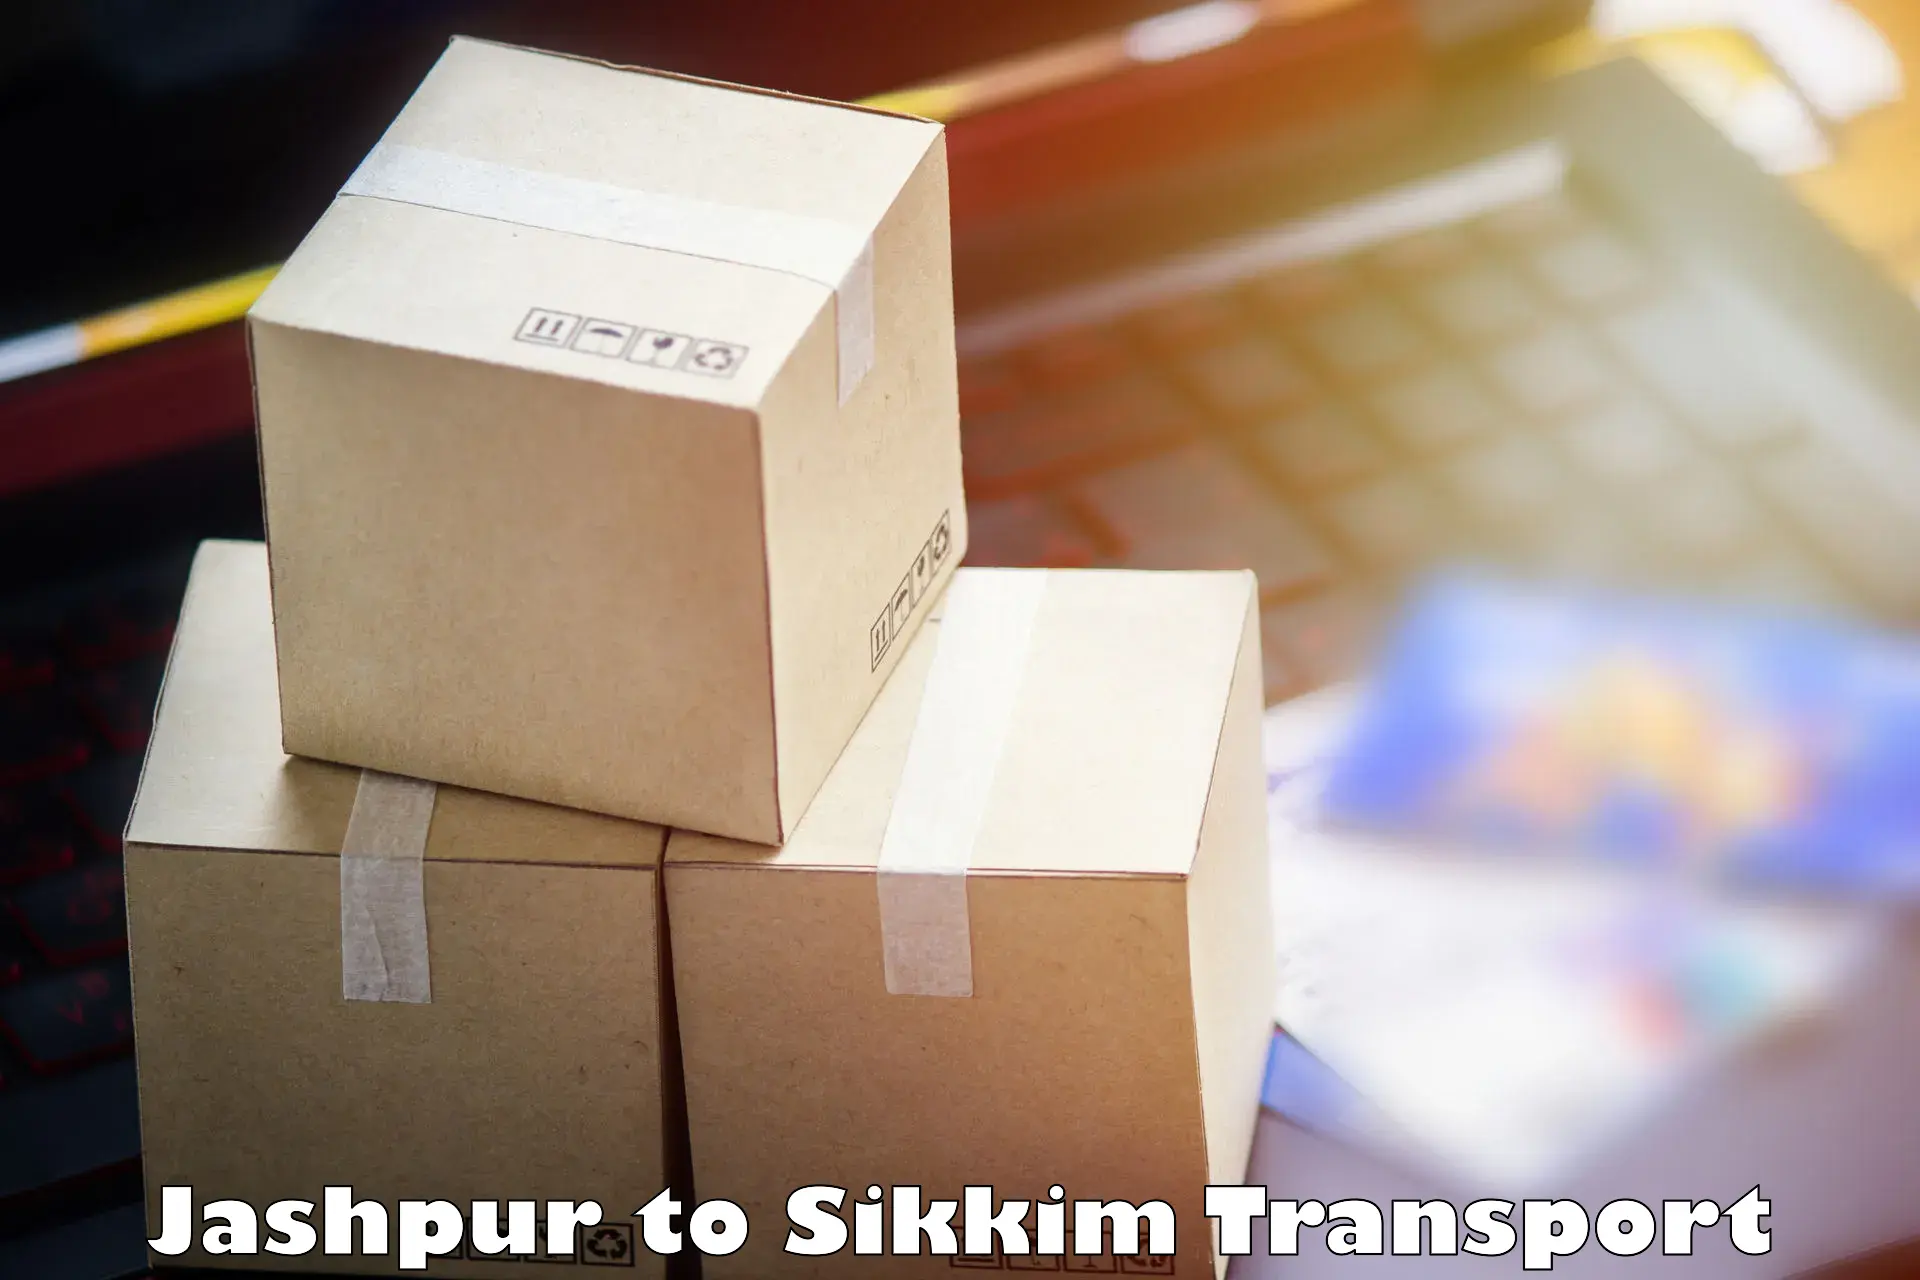 Interstate transport services Jashpur to North Sikkim